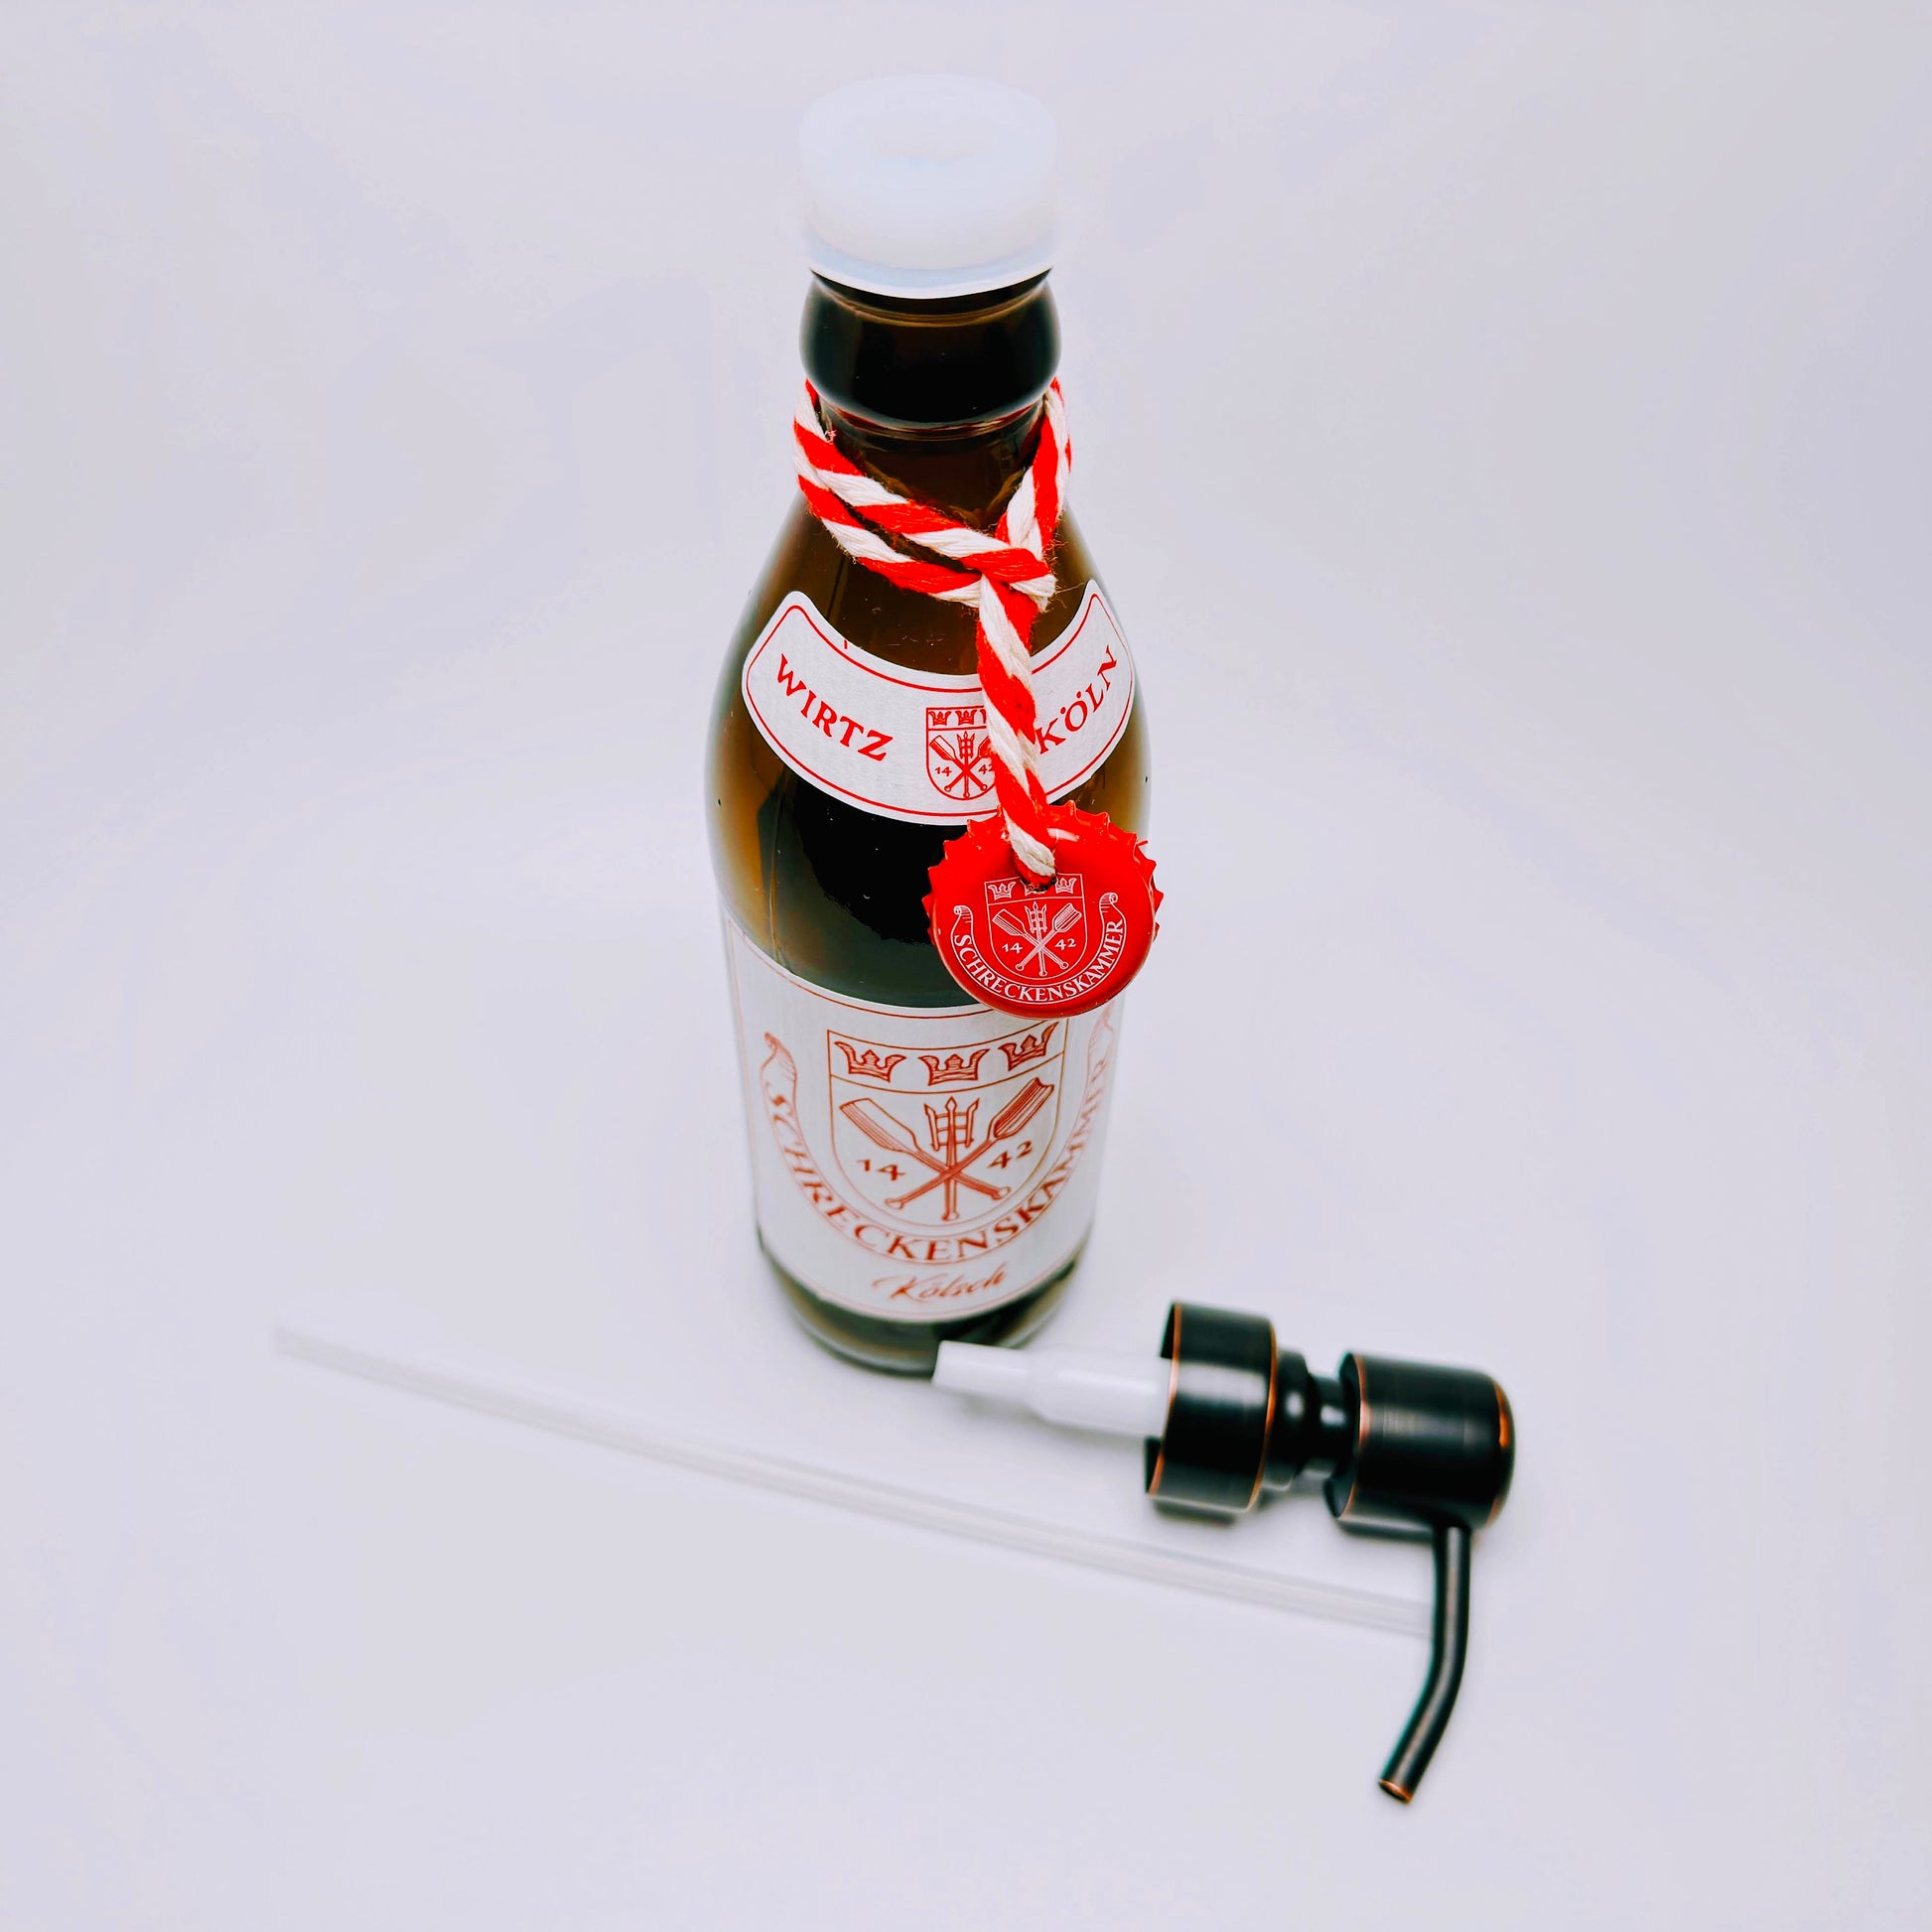 Seifenspender aus Kölsch-Bierflaschen - Handgemacht - Upcycling - Nachfüllbarer Pumpspender für Seife, Lotion oder Spüli - 0,33l - Köln Geschenk